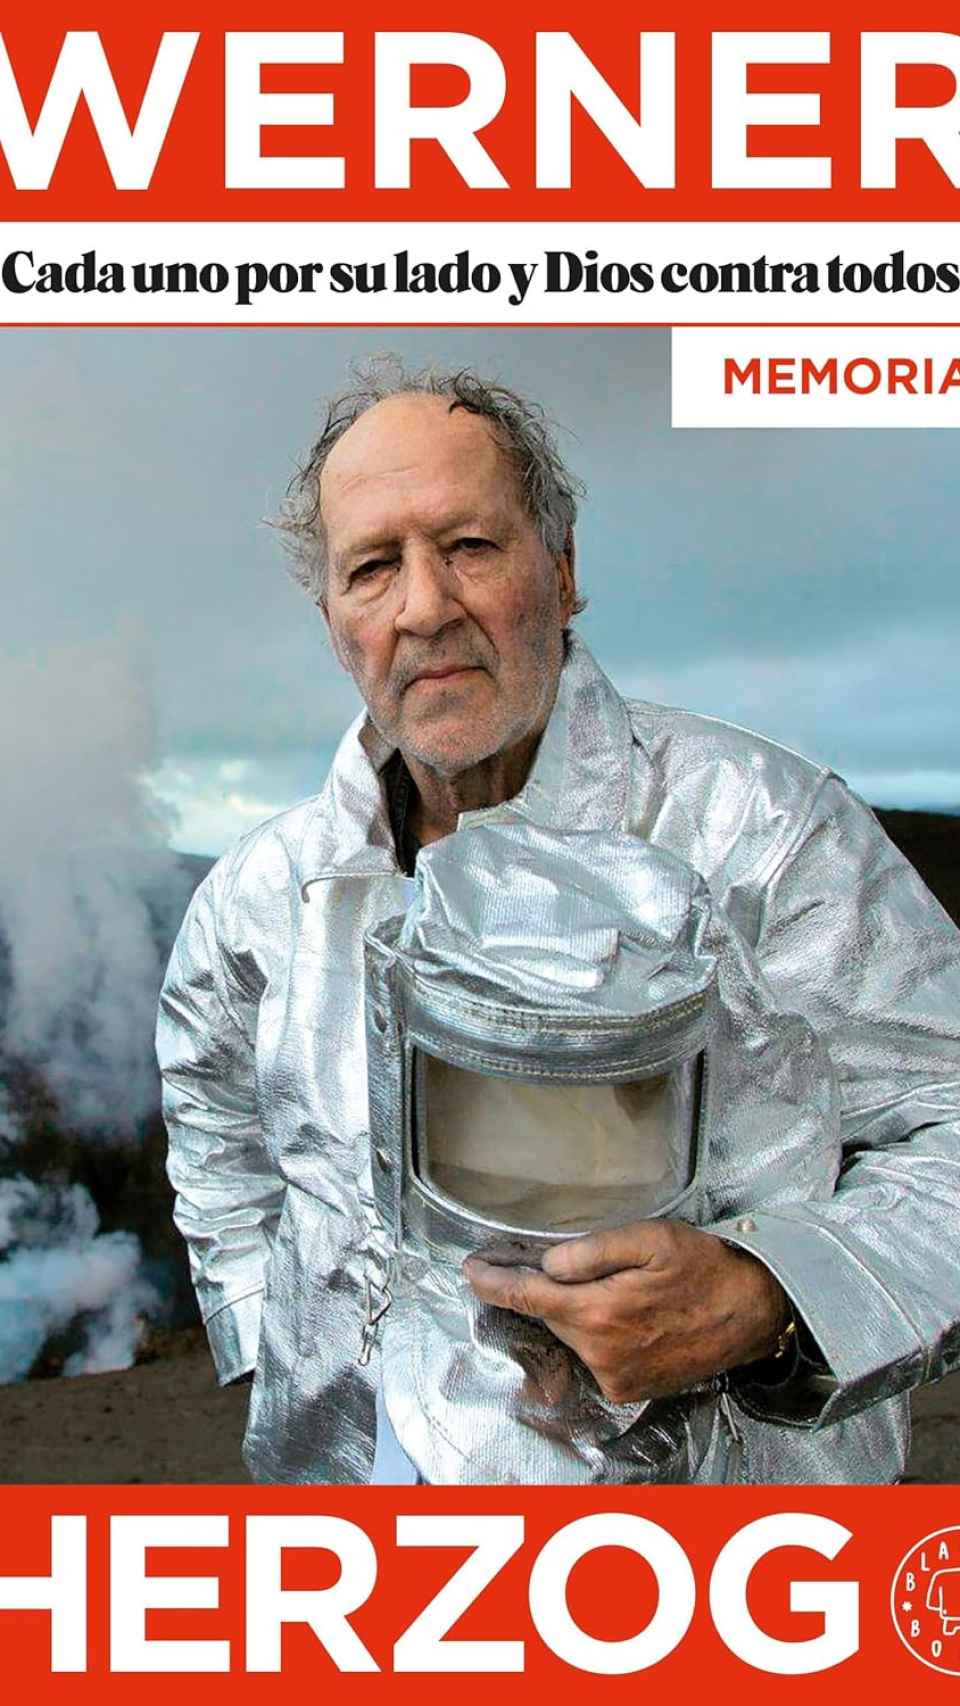 'Cada uno por su lado y Dios contra todos', las memorias de Werner Herzog